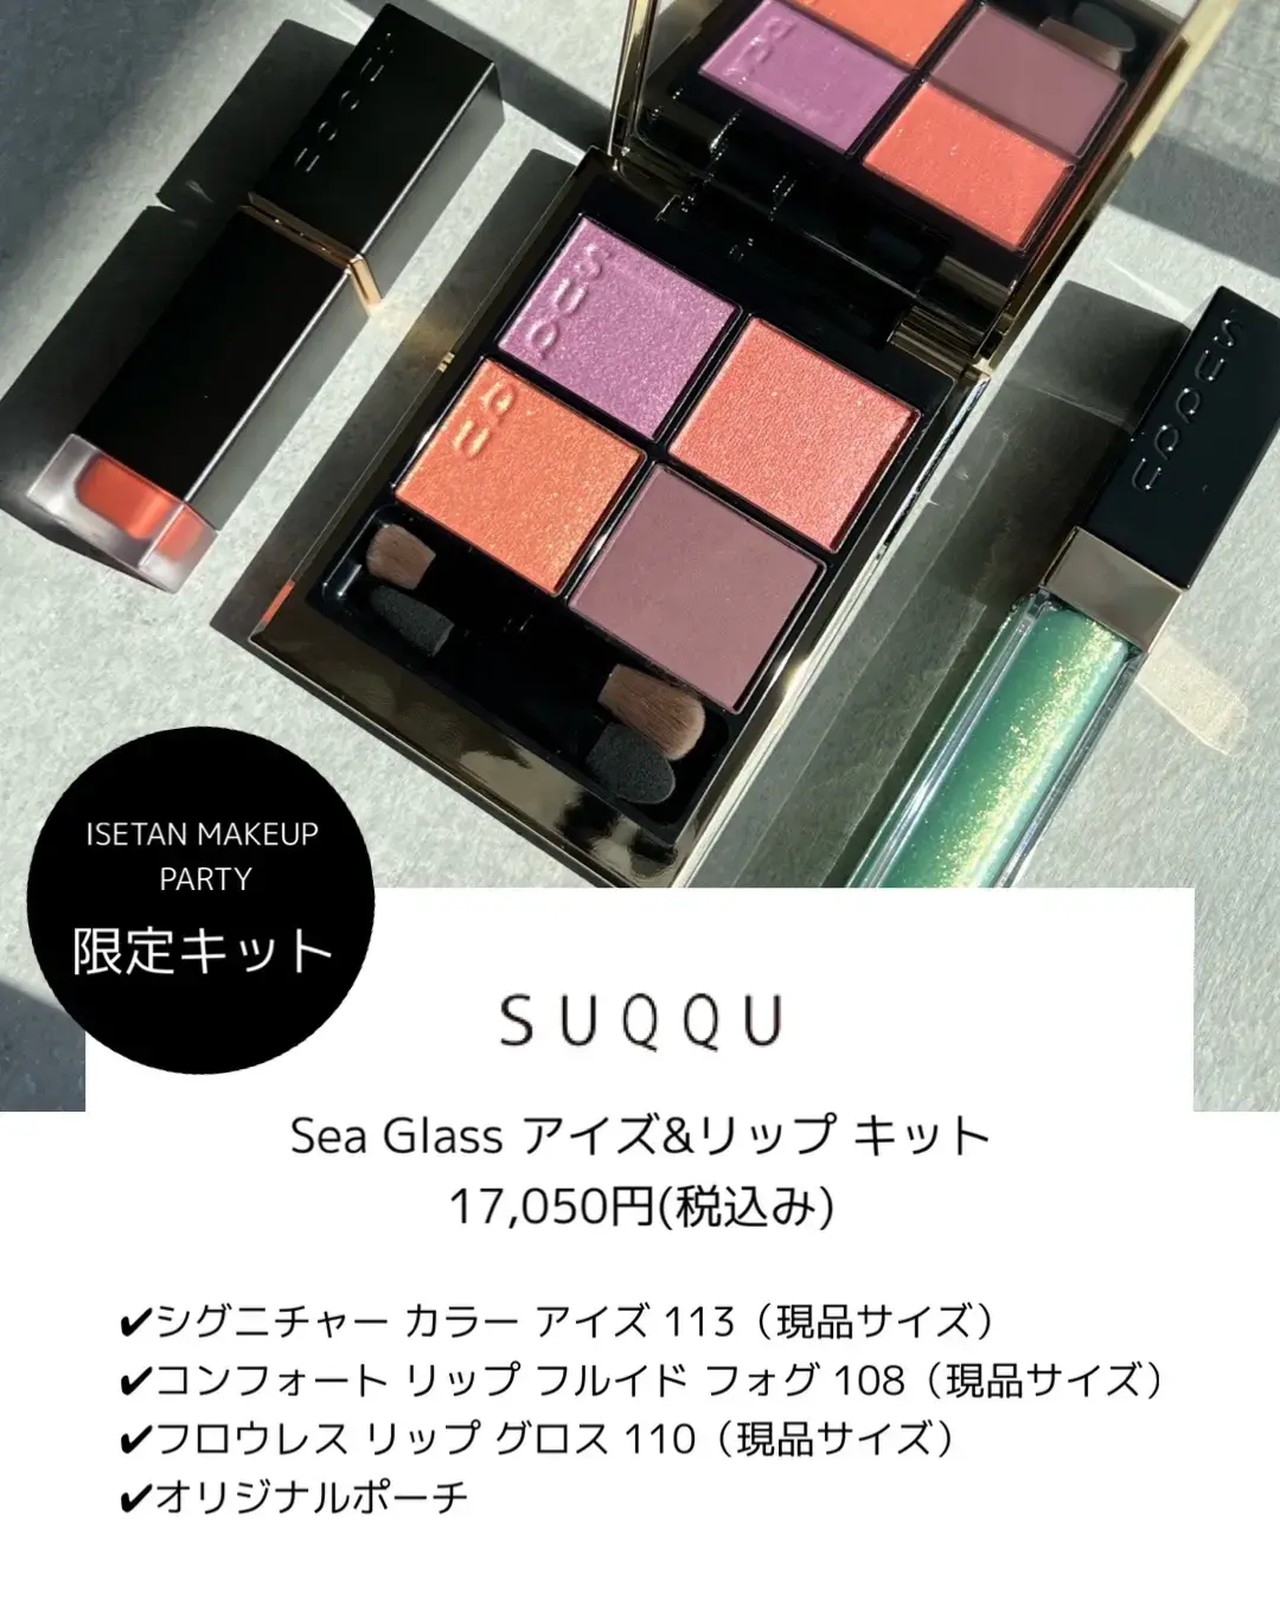 SUQQU Sea Glass アイズ&リップキット-